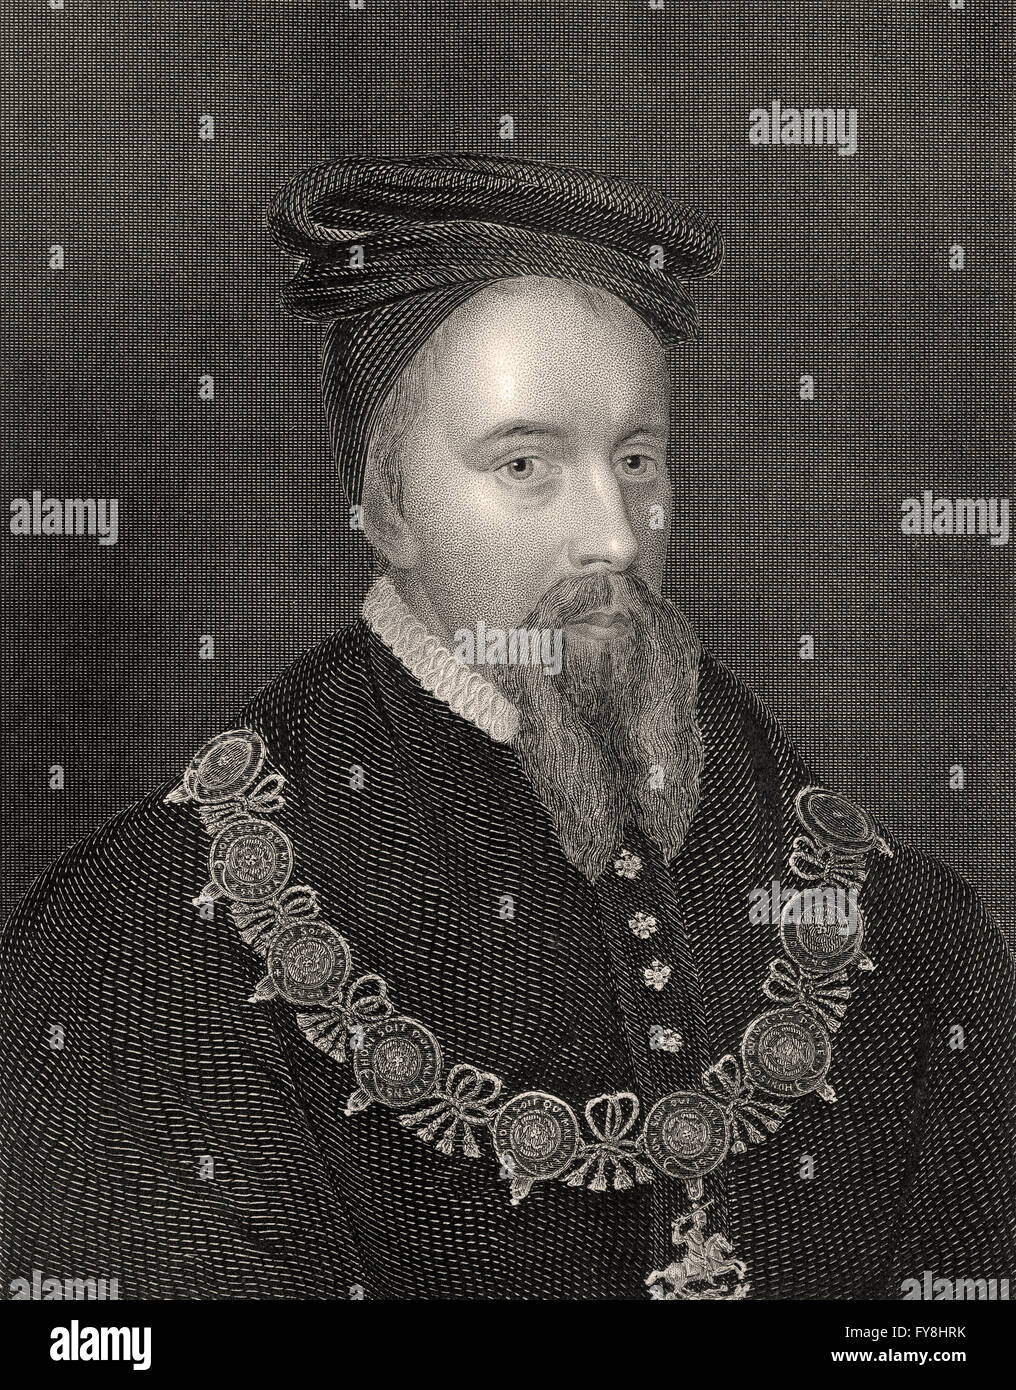 Henry Vii 1485-1509 King Of England Kids T-Shirt by Vintage Design Pics -  Pixels